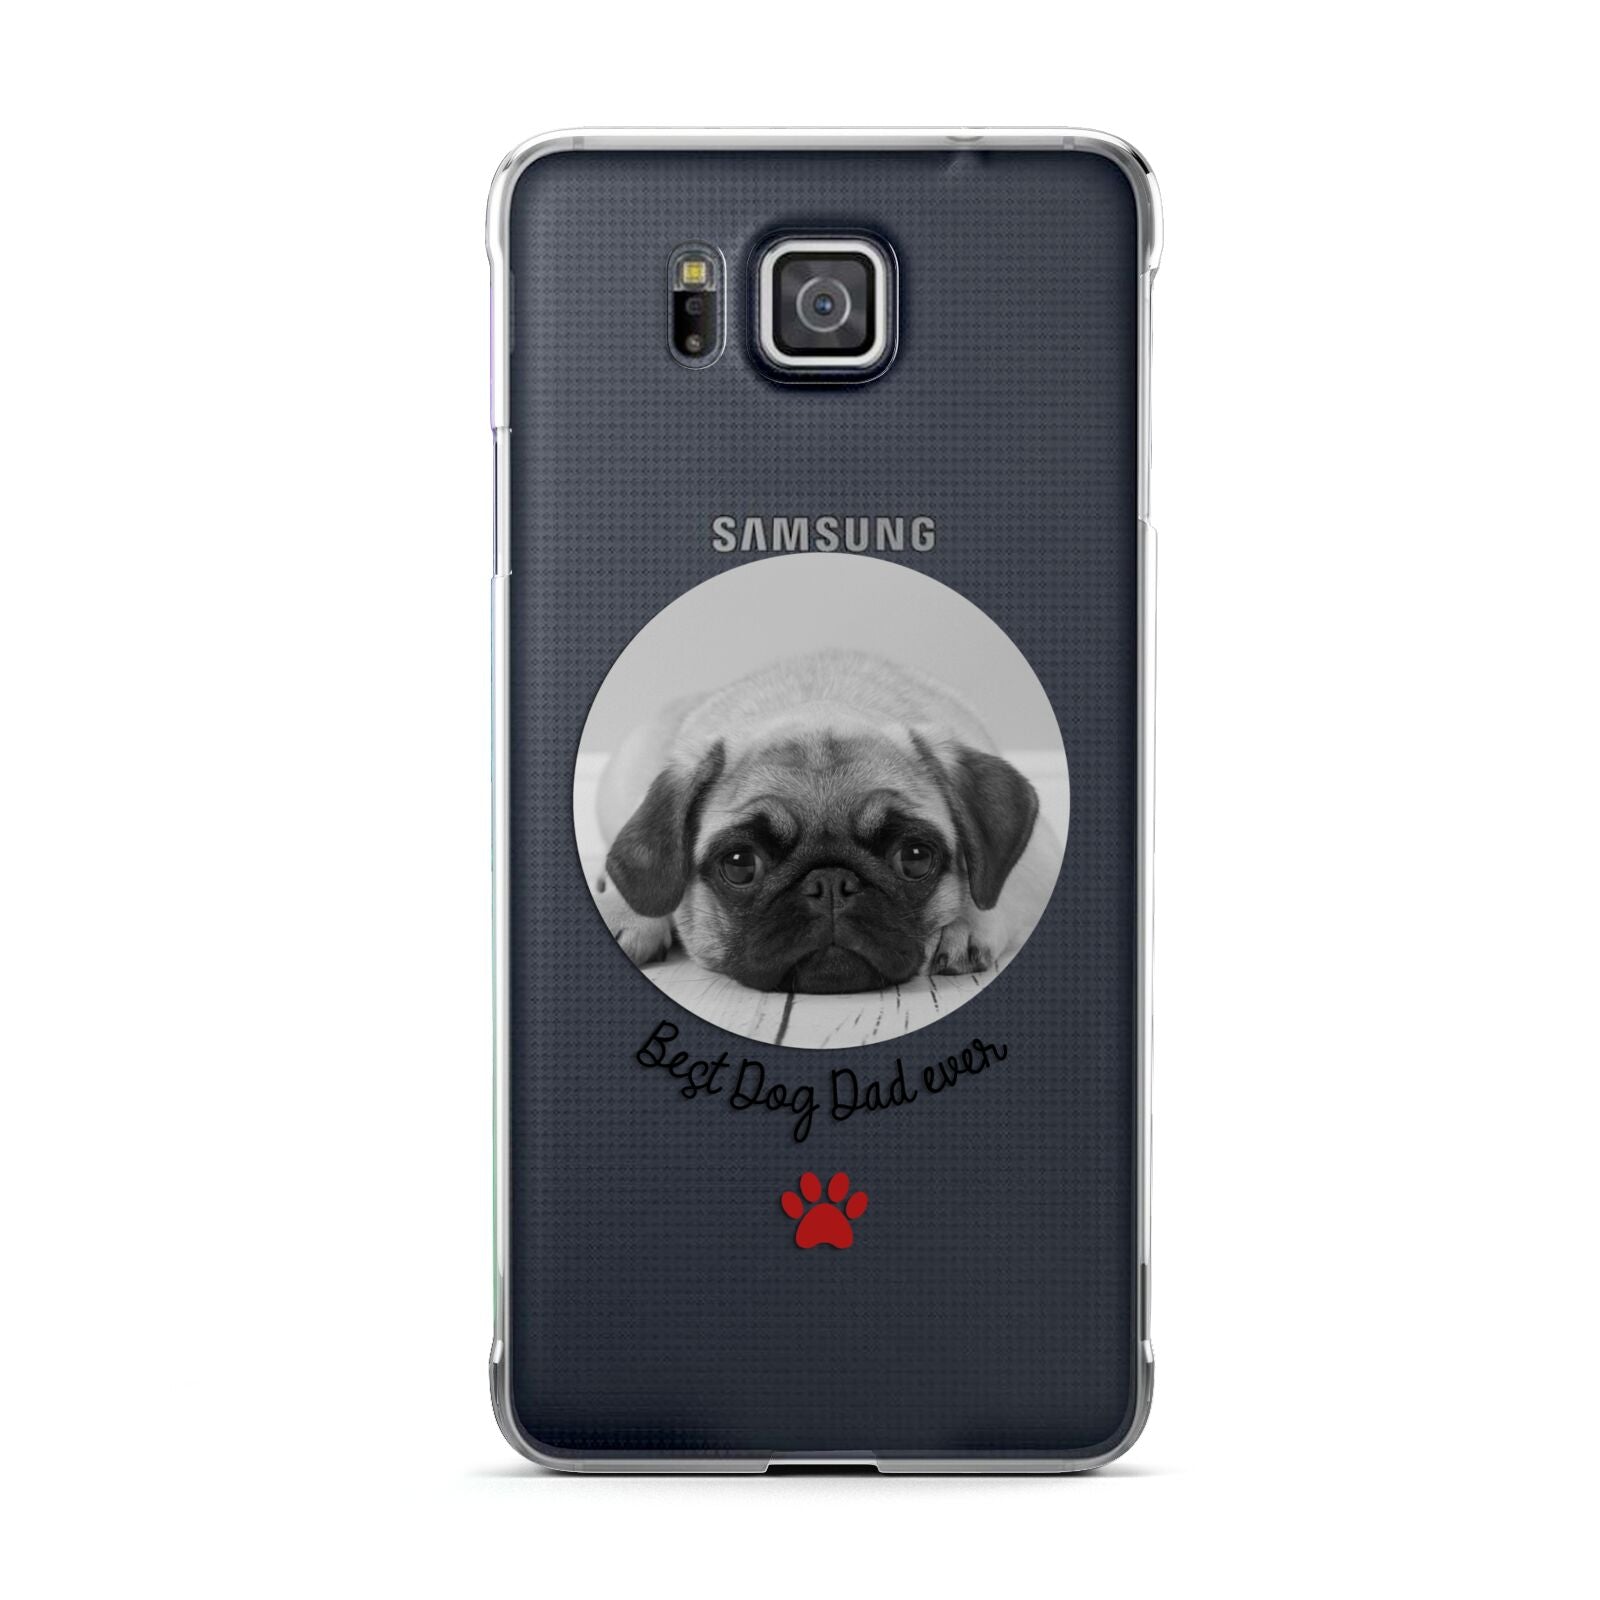 Best Dog Dad Ever Photo Upload Samsung Galaxy Alpha Case